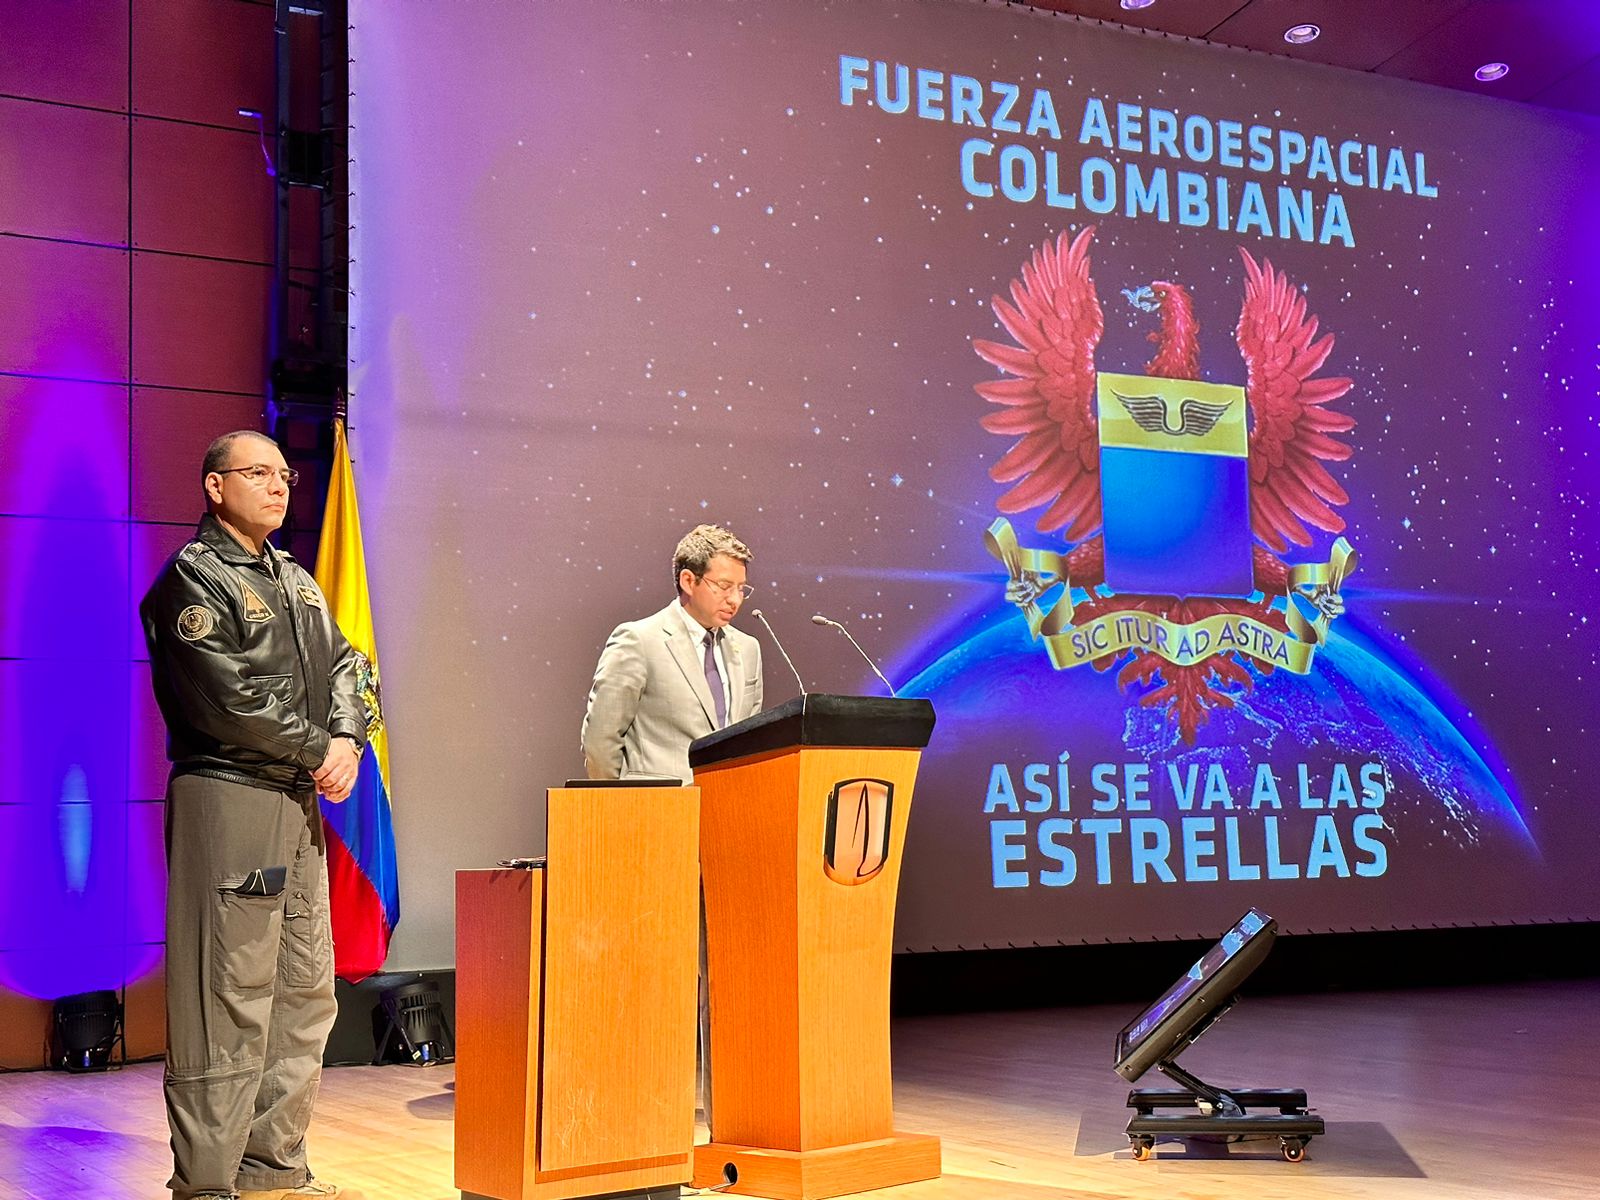 En la Universidad de los Andes, se llevó a cabo un encuentro con su Fuerza Aeroespacial